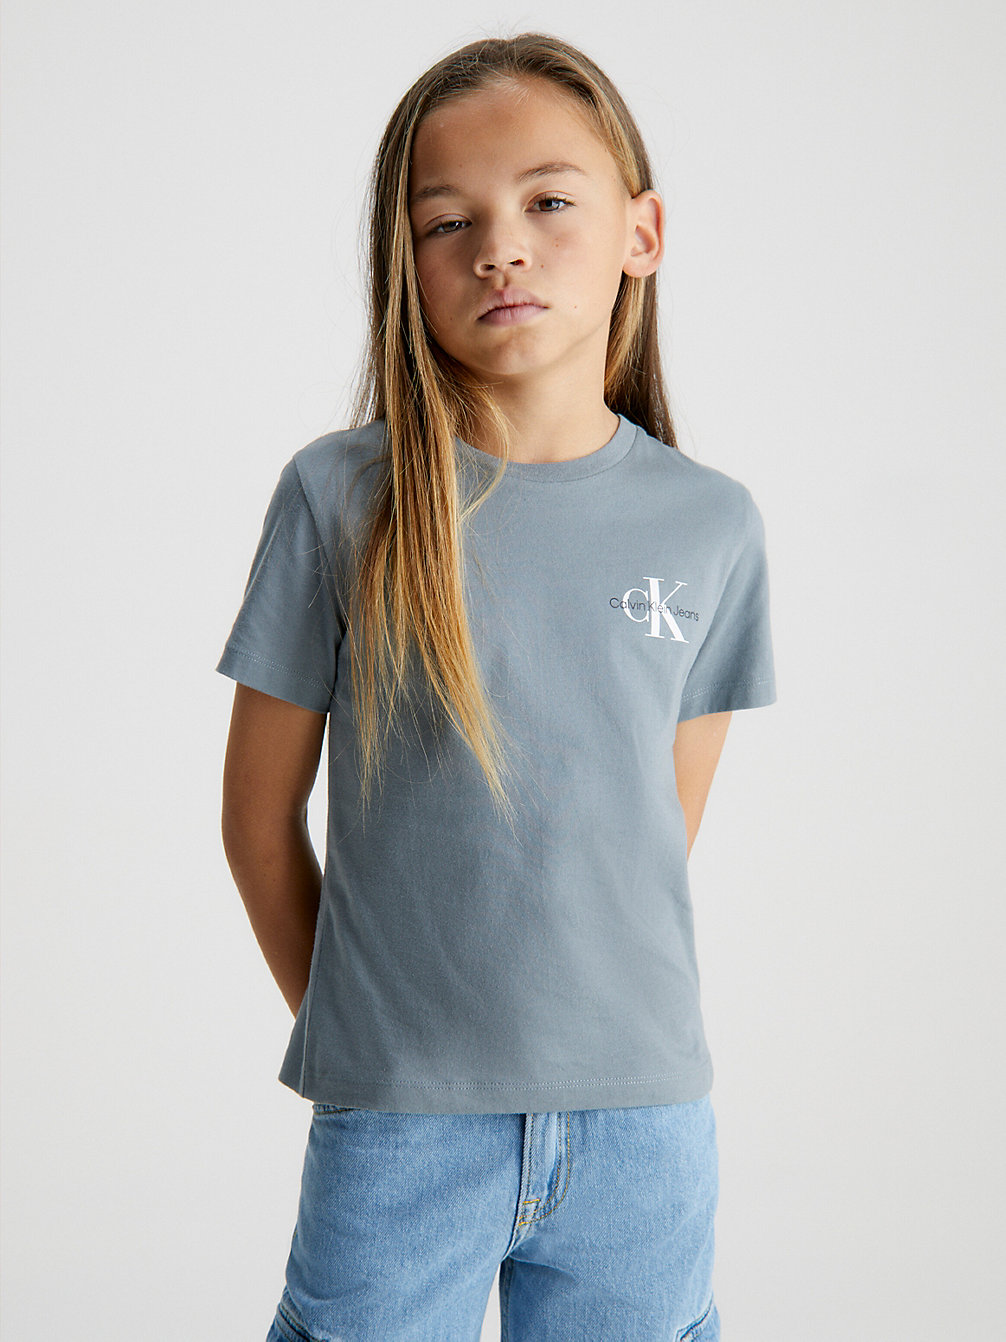 OVERCAST GREY > T-Shirt Van Biologisch Katoen > undefined boys - Calvin Klein